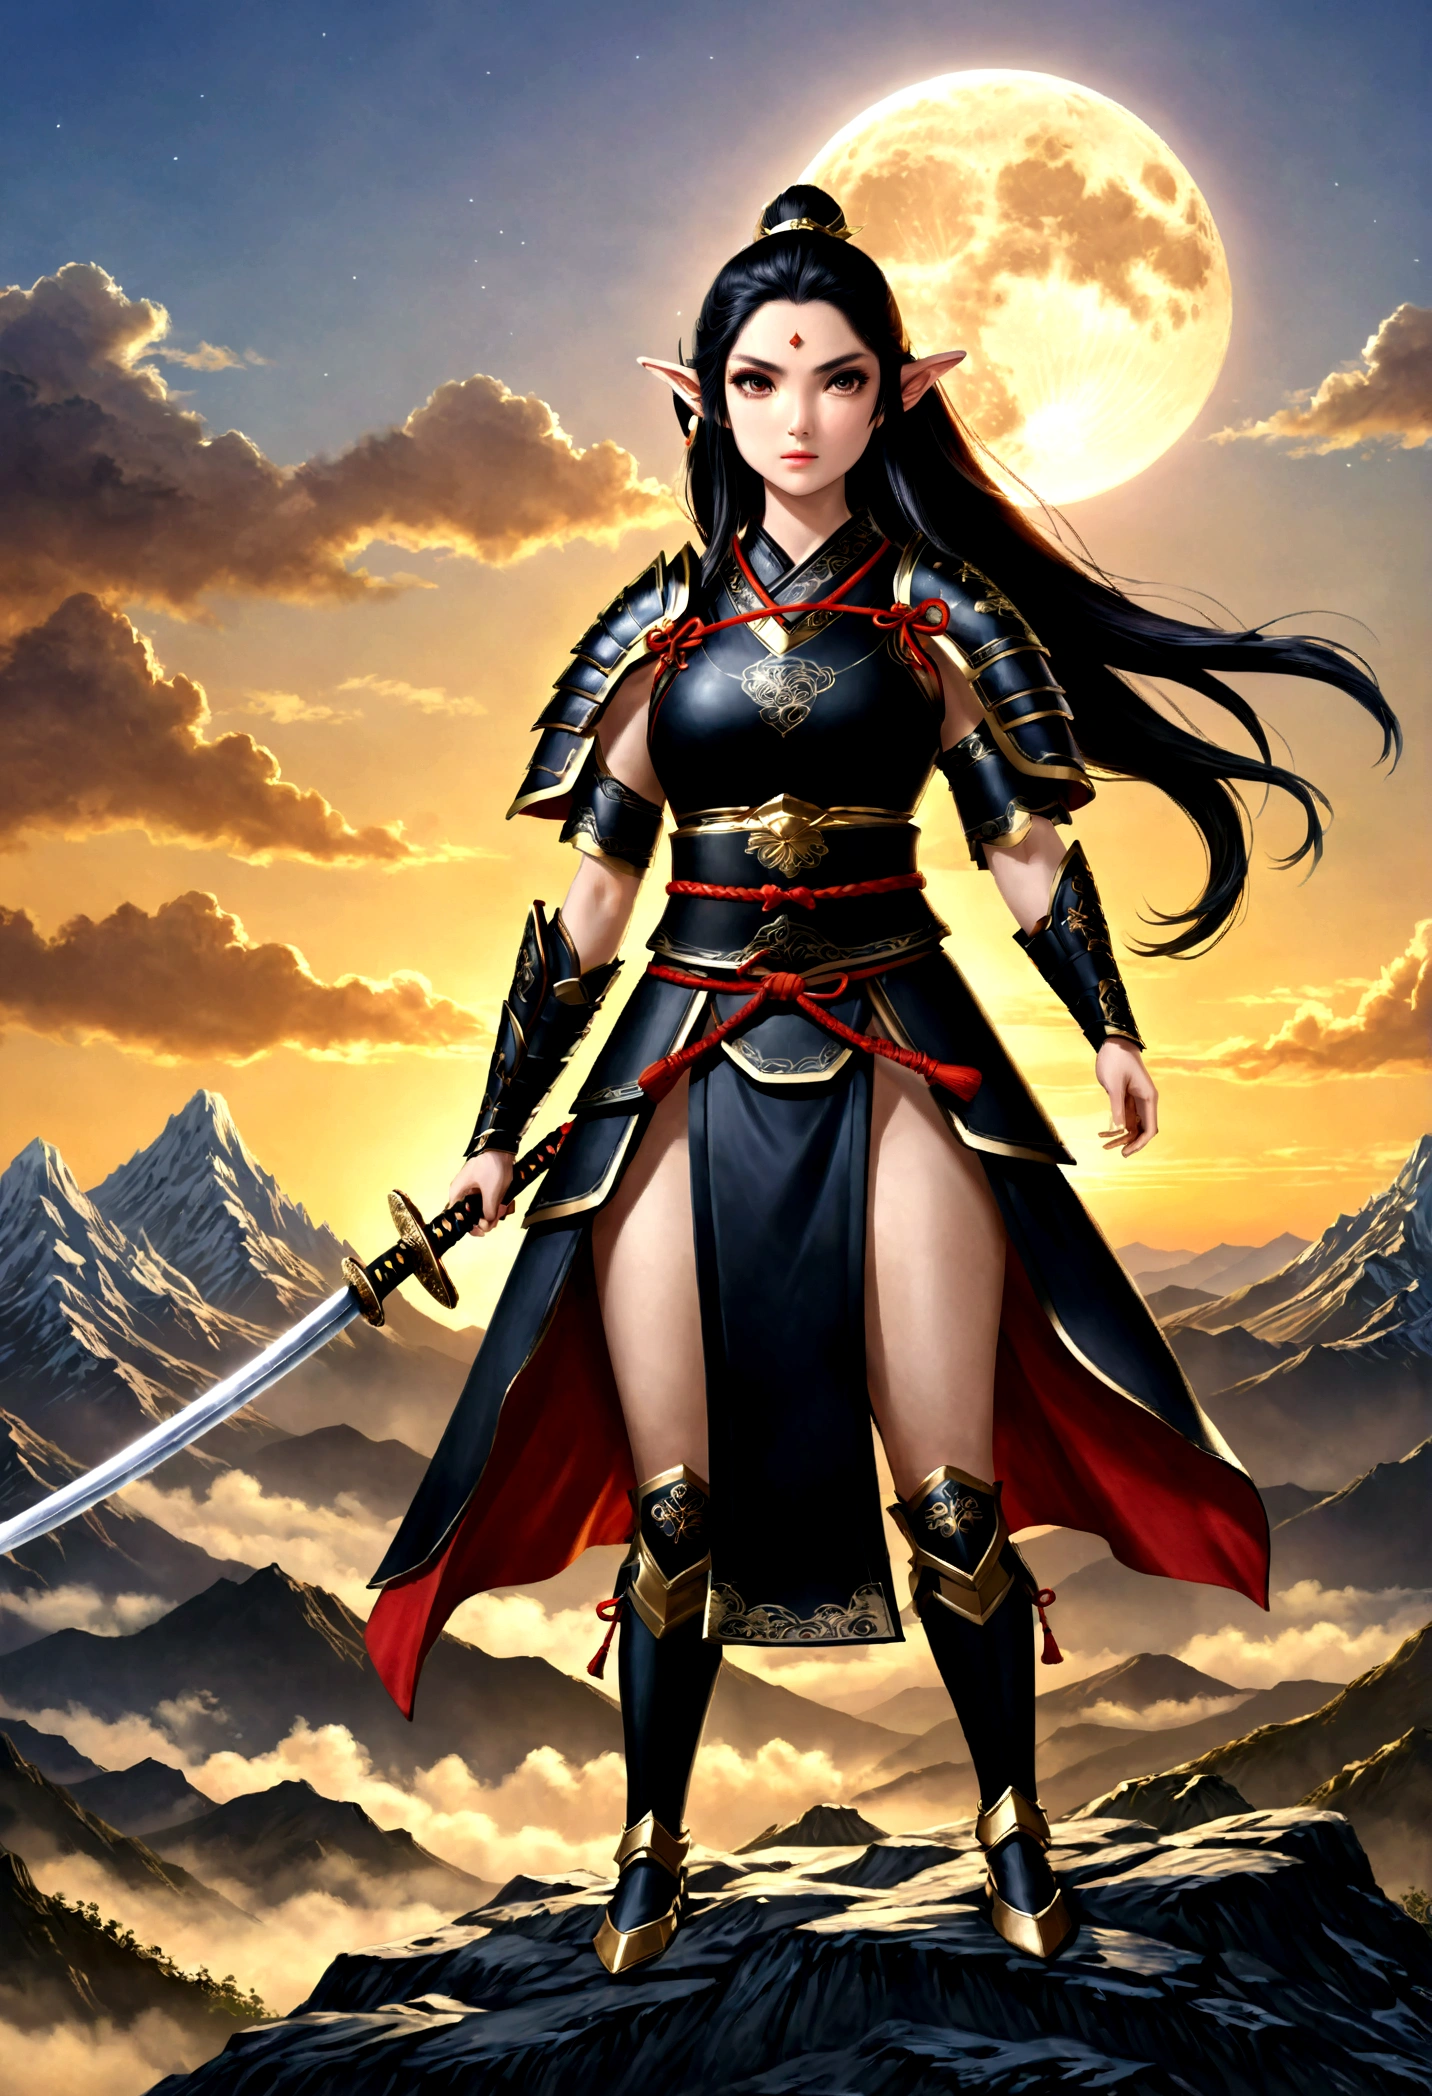 фэнтези-арт, РПГ арт, dark фэнтези-арт, женщина-эльф-самурай, готов к бою, она носит традиционные самурайские доспехи,  она носит бронированную юбку, вооружен катаной, она стоит на вершине горы на рассвете, изысканная красивая эльфийка, Длинные волосы, черные волосы, Прямые волосы, Плетеные волосы, черные глаза, напряженные глаза, маленькие заостренные уши, Фэнтезийная вершина горы на рассвете, луна, звезды, облака, Бог лучи, мягкий силуэт естественного света, Динамический угол, фотореализм, панорамный вид, ультра лучший реалистичный, лучшие детали, 16 тыс., [Ультра подробный], шедевр, Лучшее качество, (чрезвычайно подробный), фотореализм, 